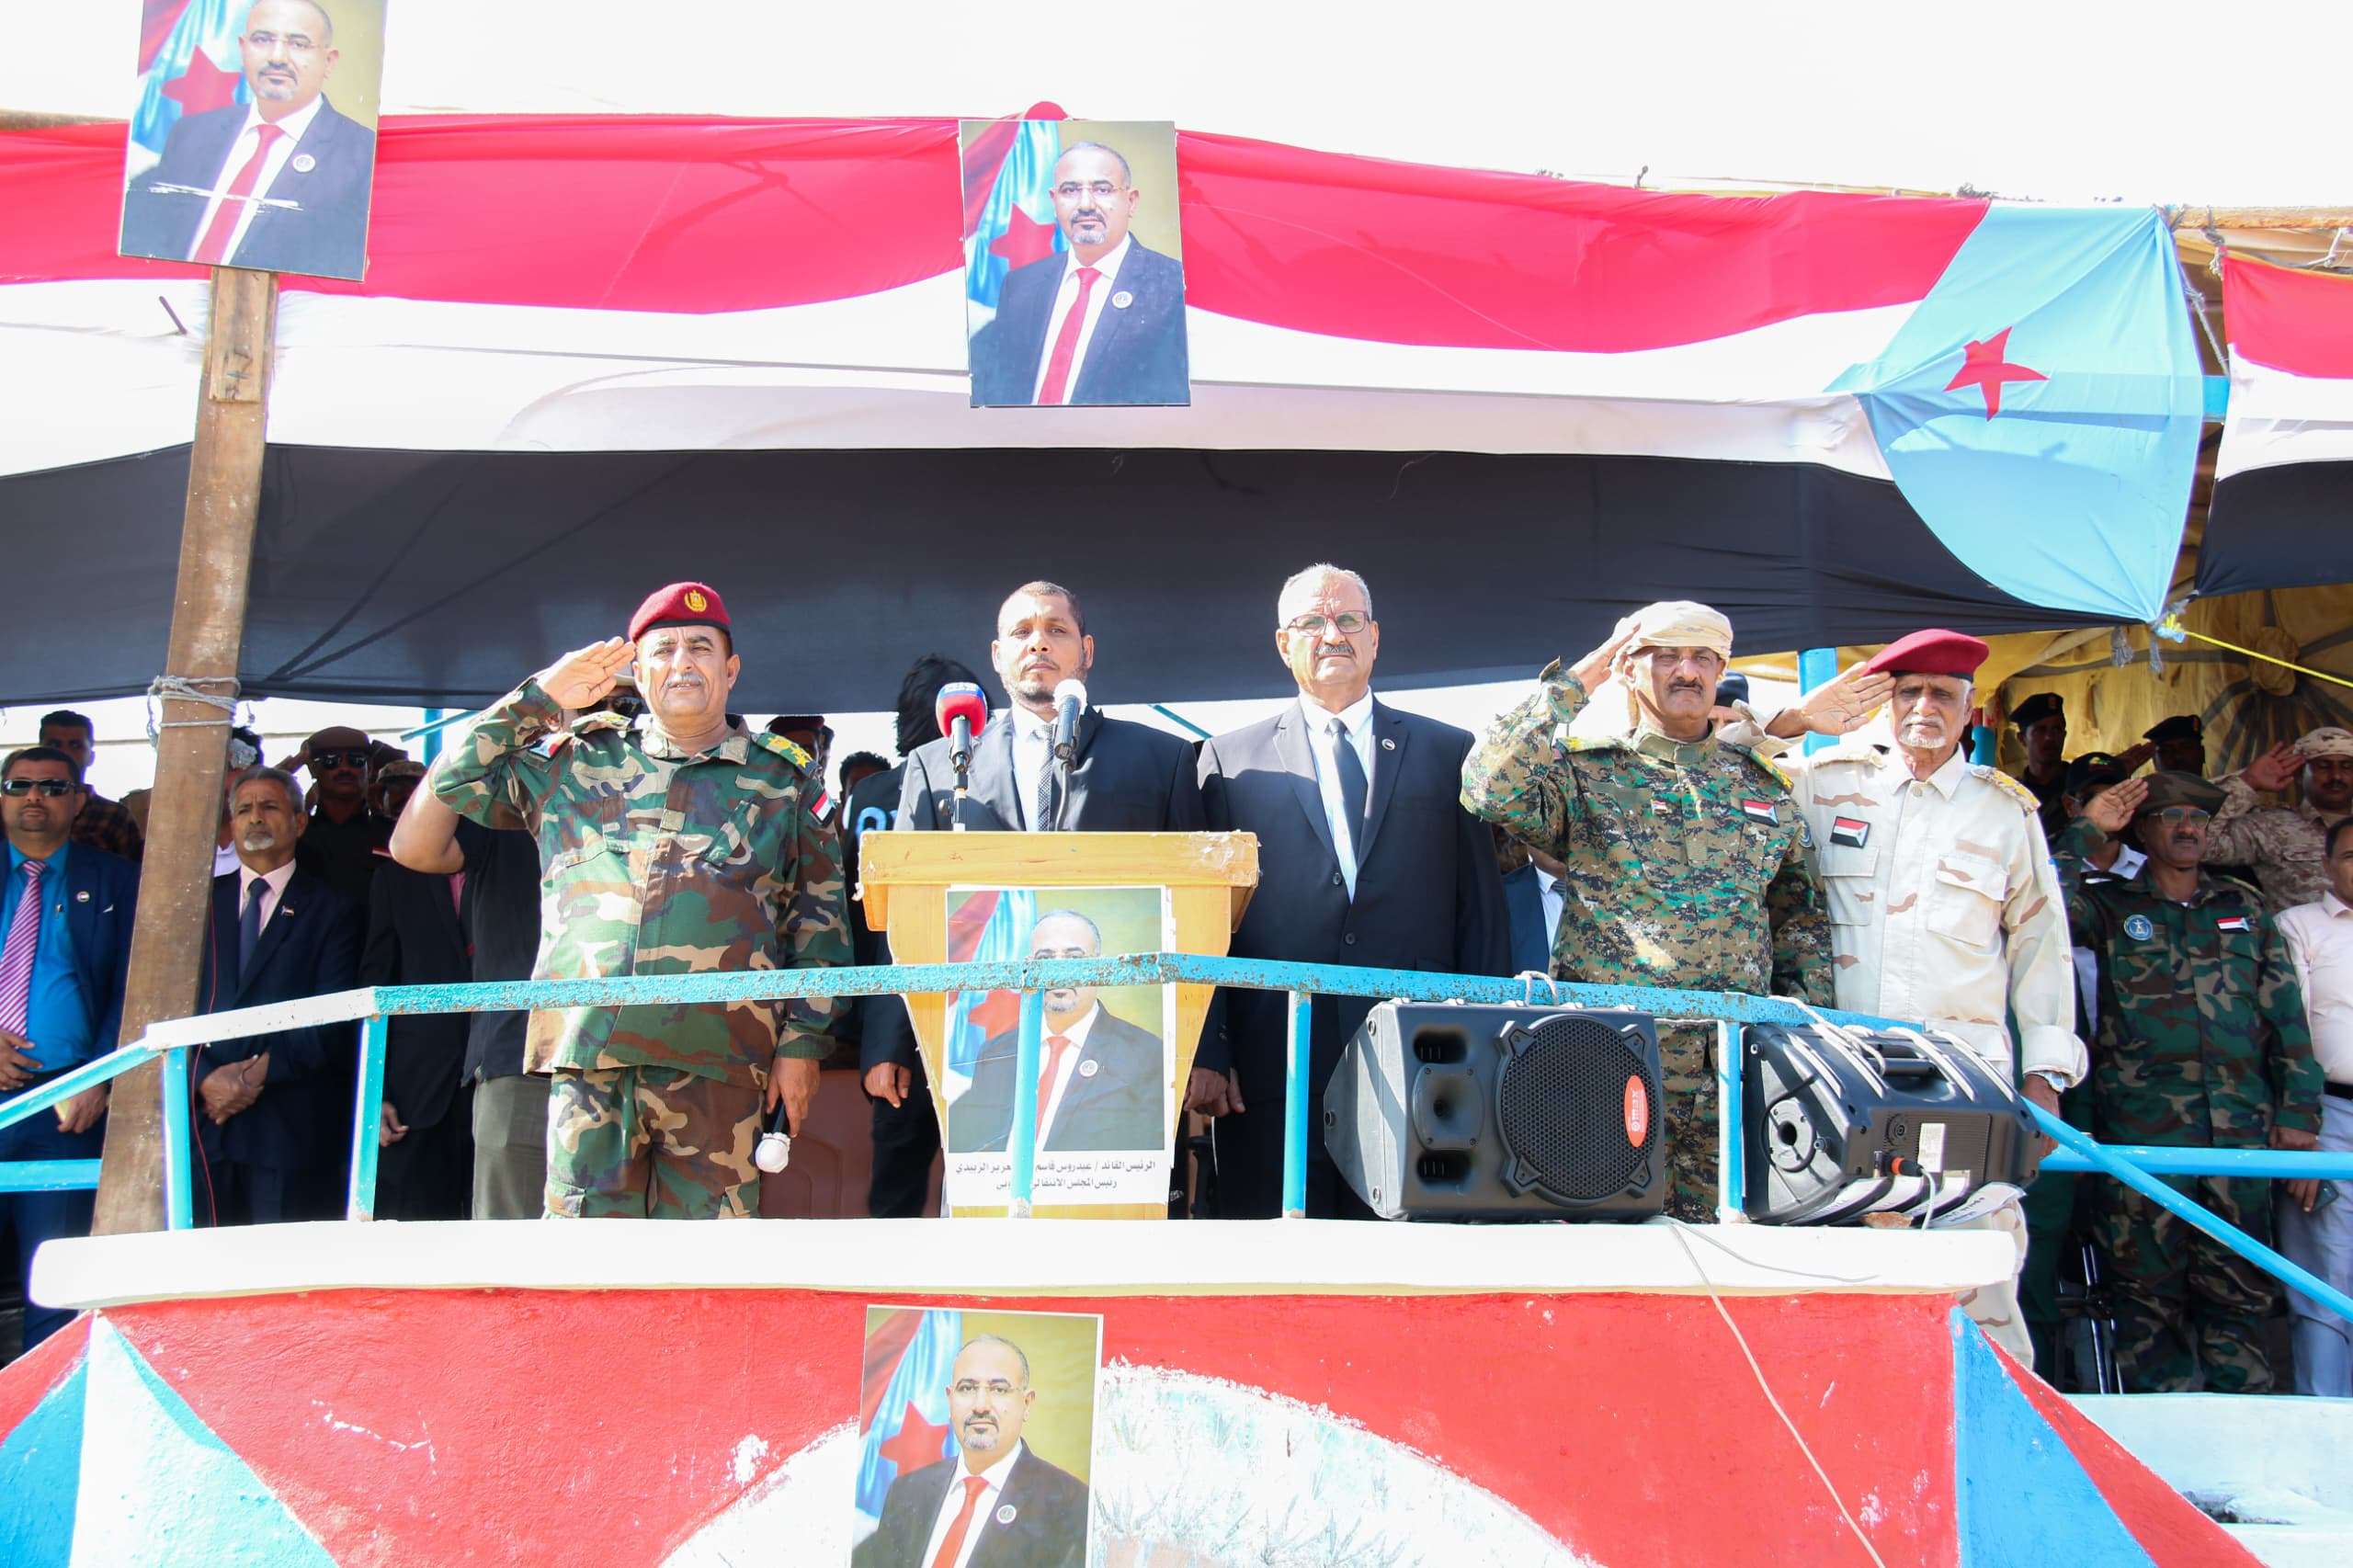 الجعدي يشهد عرضاً عسكرياً في سقطرى بمناسبة الذكرى الـ 56 لعيد الاستقلال الوطني الجنوبي المجيد الـ 30 من نوفمبر